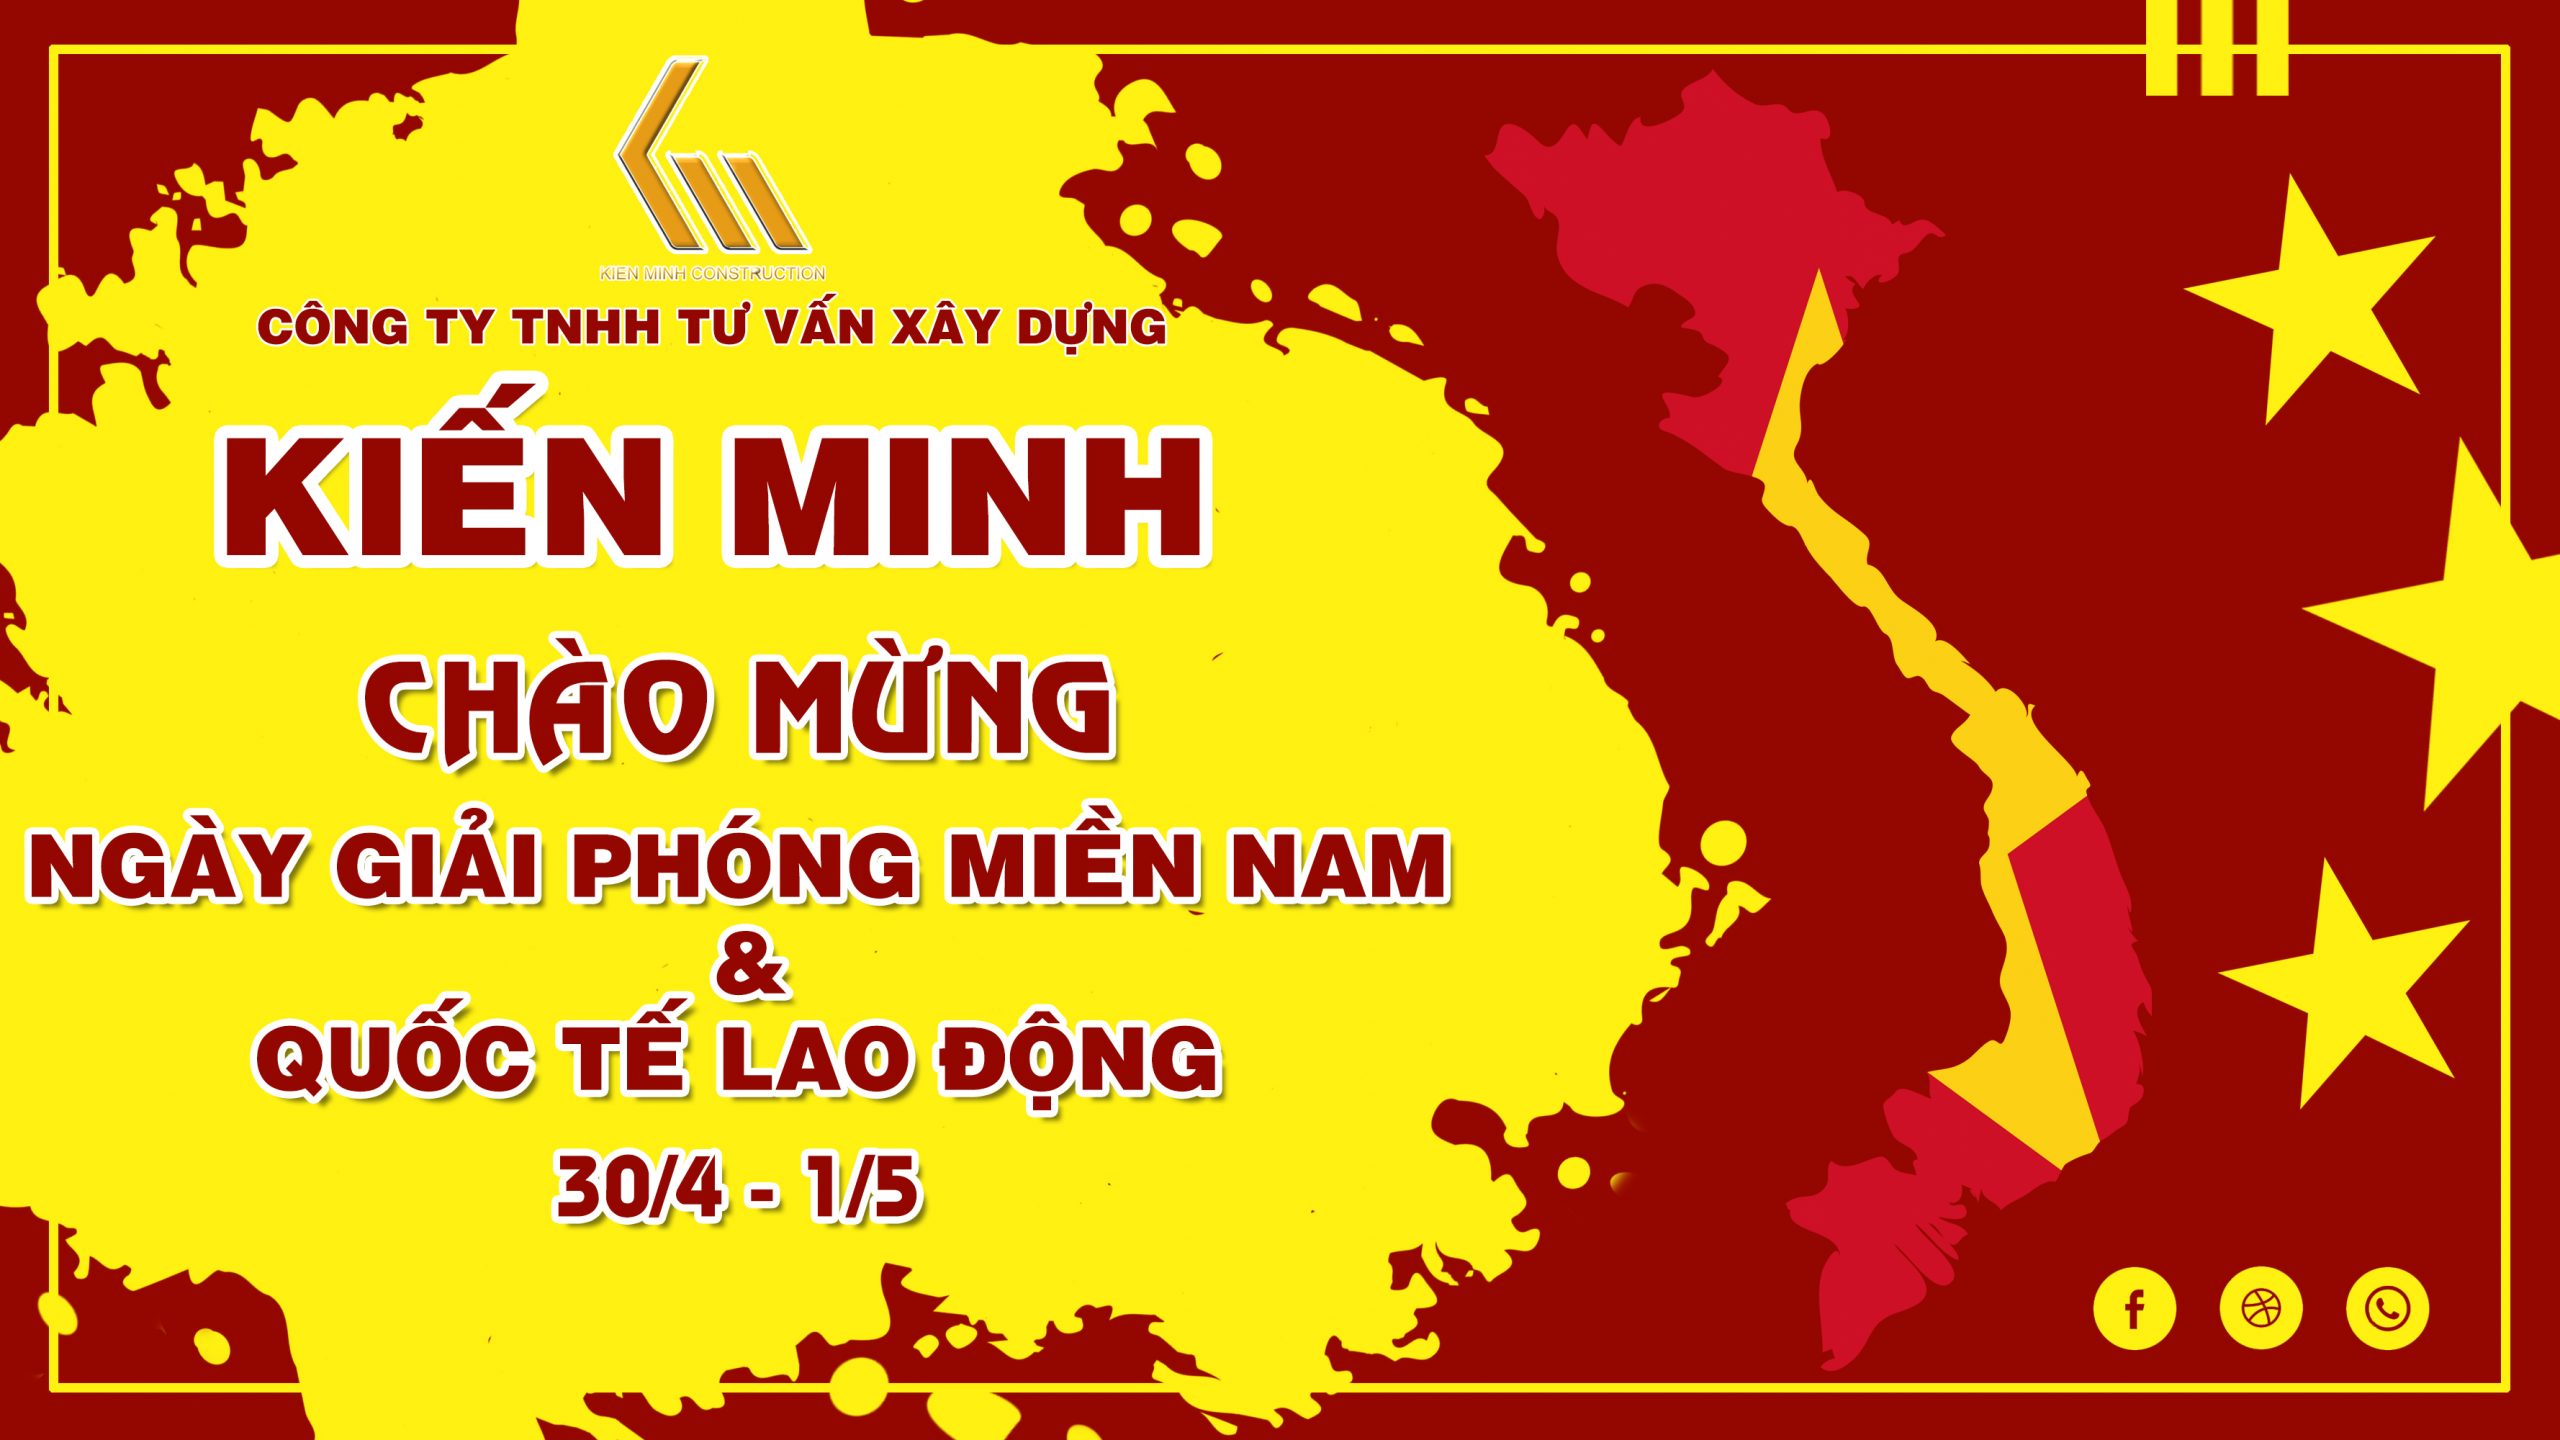 CHÀO MỪNG ĐẠI LỄ 30/4 & 1/5 - Kiến trúc xây dựng Kiến Minh - Xây Nhà Trọn  Gói tại Quảng Bình